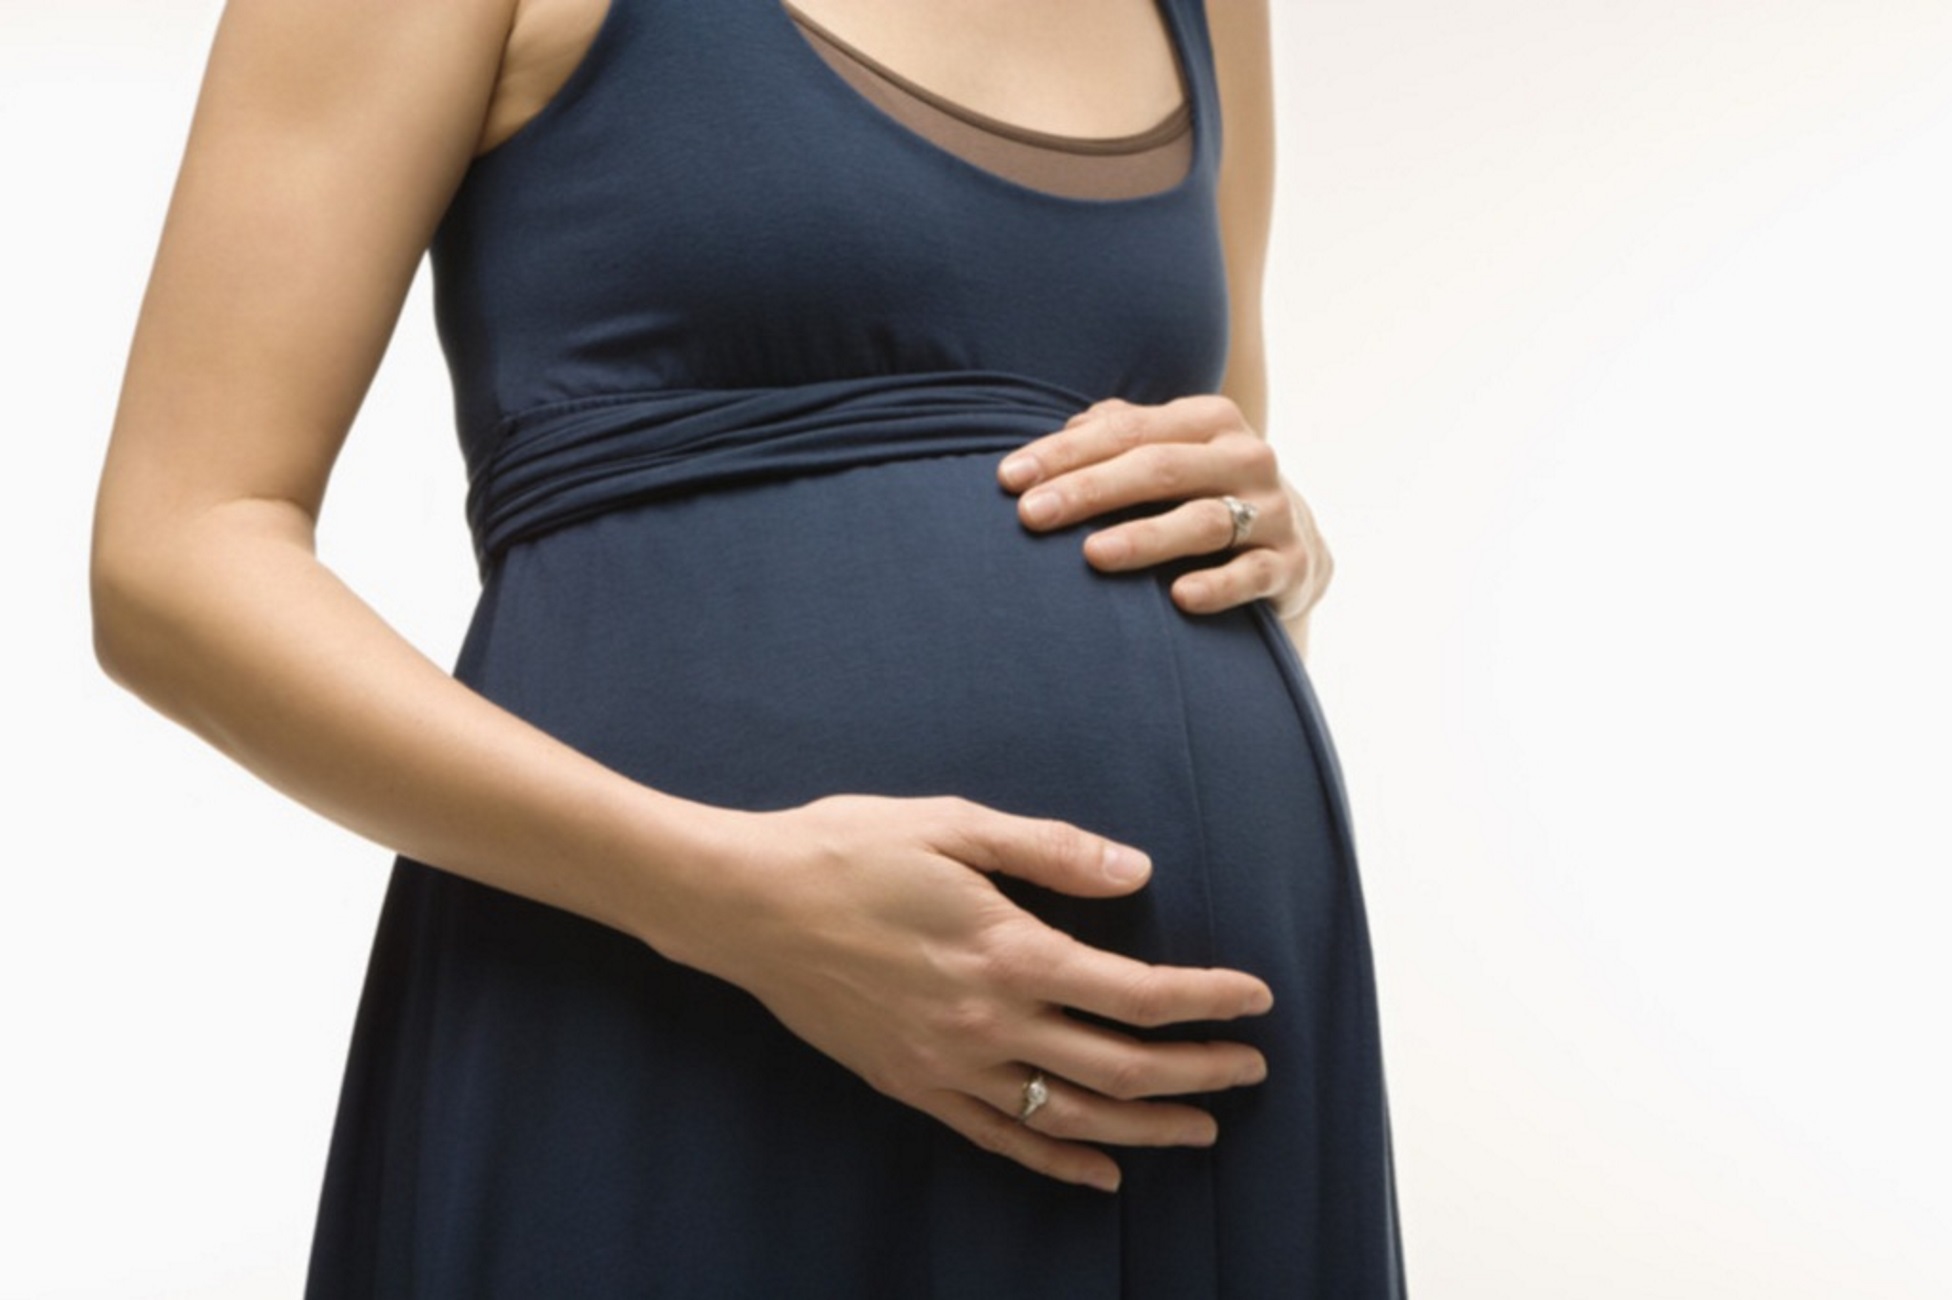 Ηλεία: Ώρες αγωνίας για 18χρονη λεχώνα μετά από εξαιρετικά δύσκολη γέννα με καισαρική!